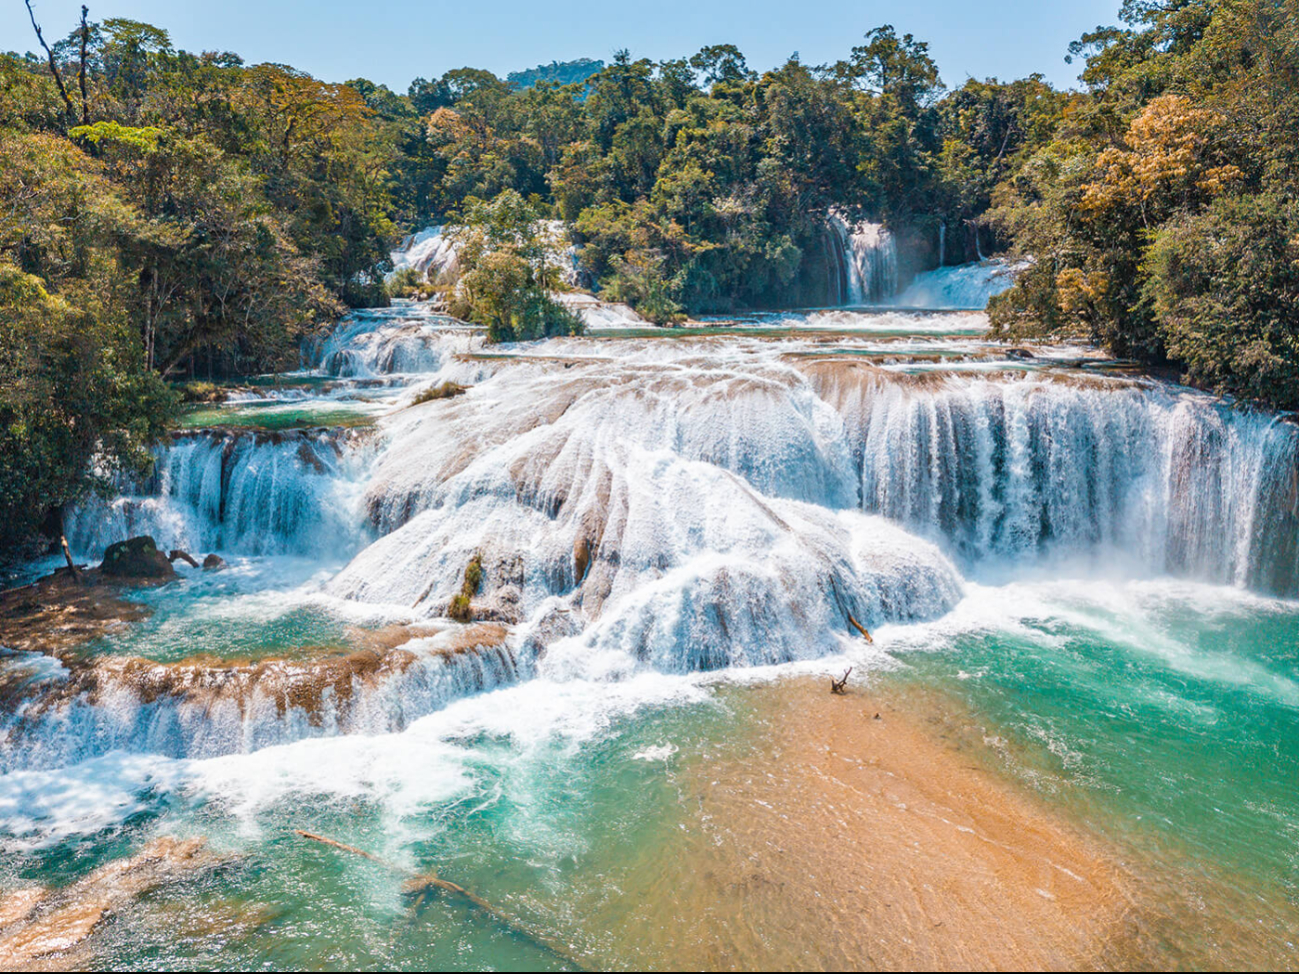 Chiapas es una de las entidades del Sureste que ofrece una variedad de atractivos naturales, como son las cascadas de agua azul